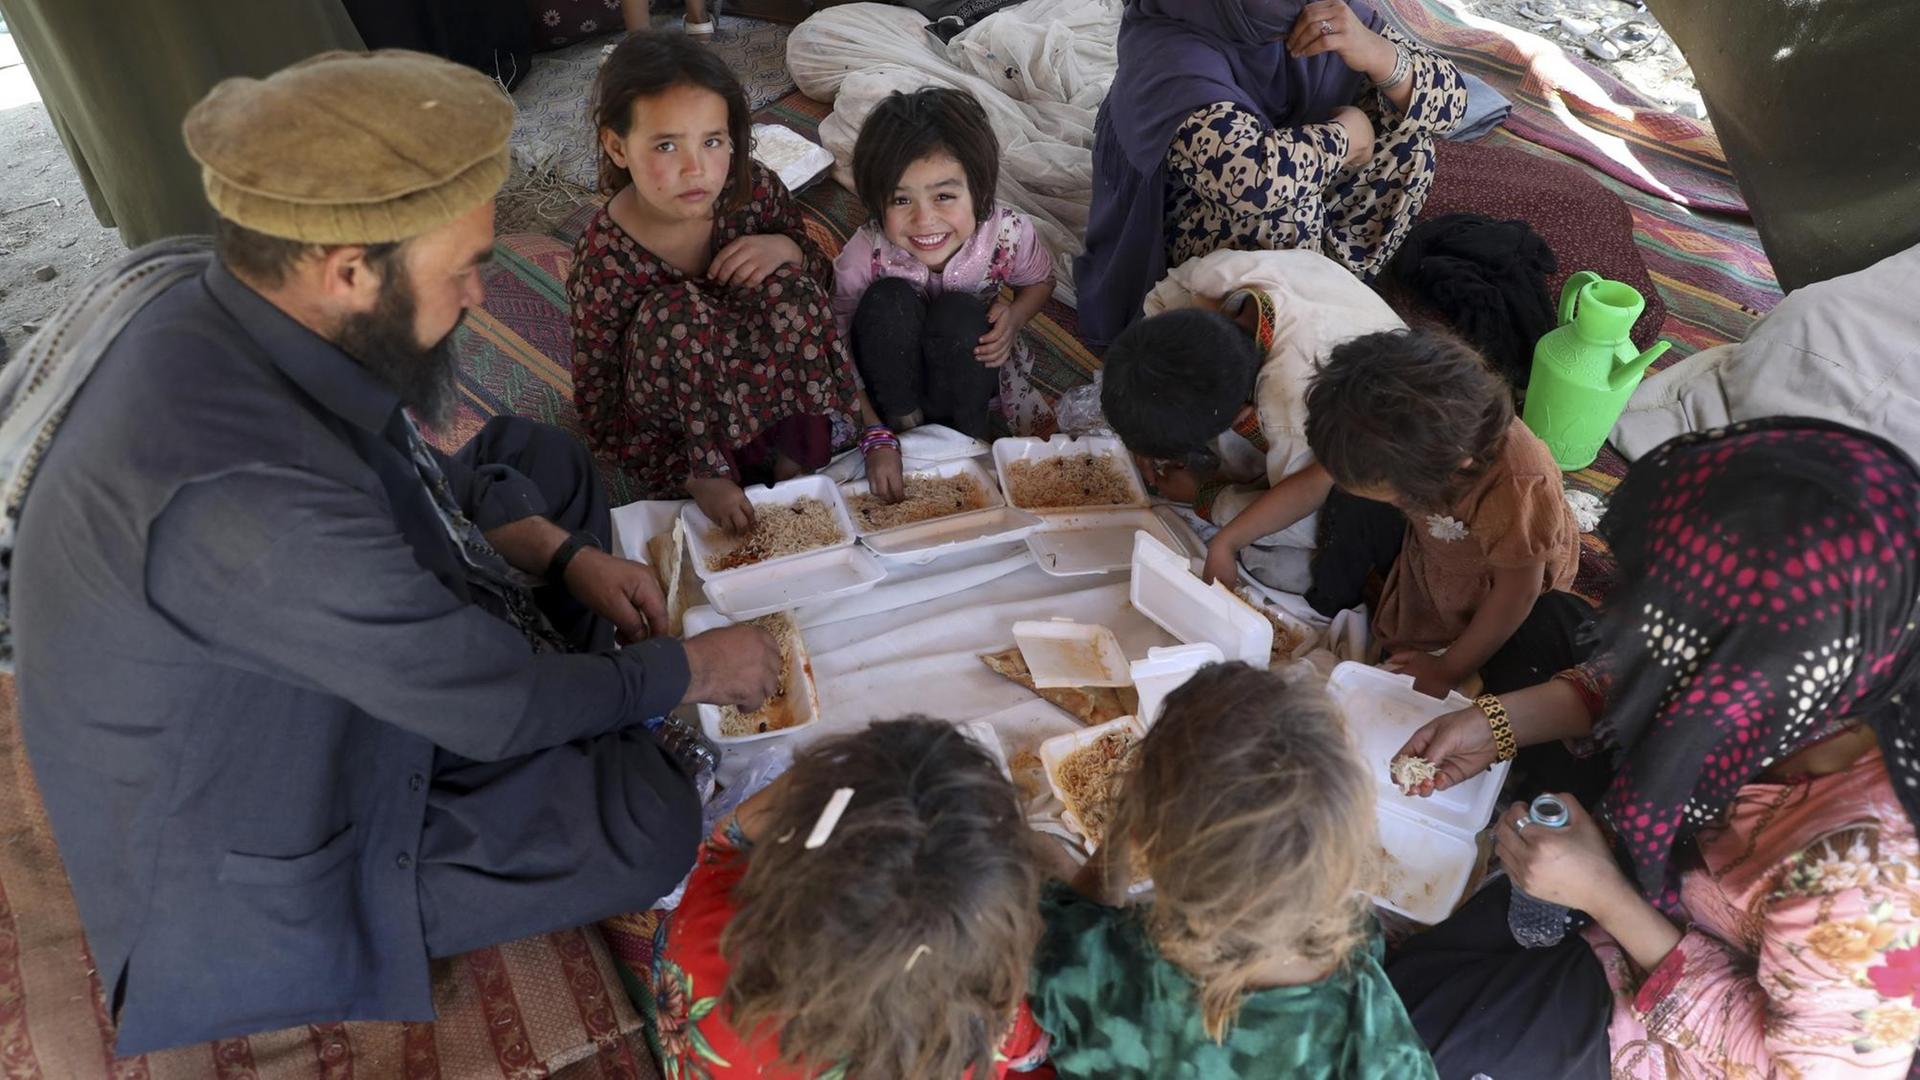  Von oben fotografierte Afghanen, Kinder und Erwachsene, sitzen um einen provisorischen Tisch und essen Lebensmittelspenden.